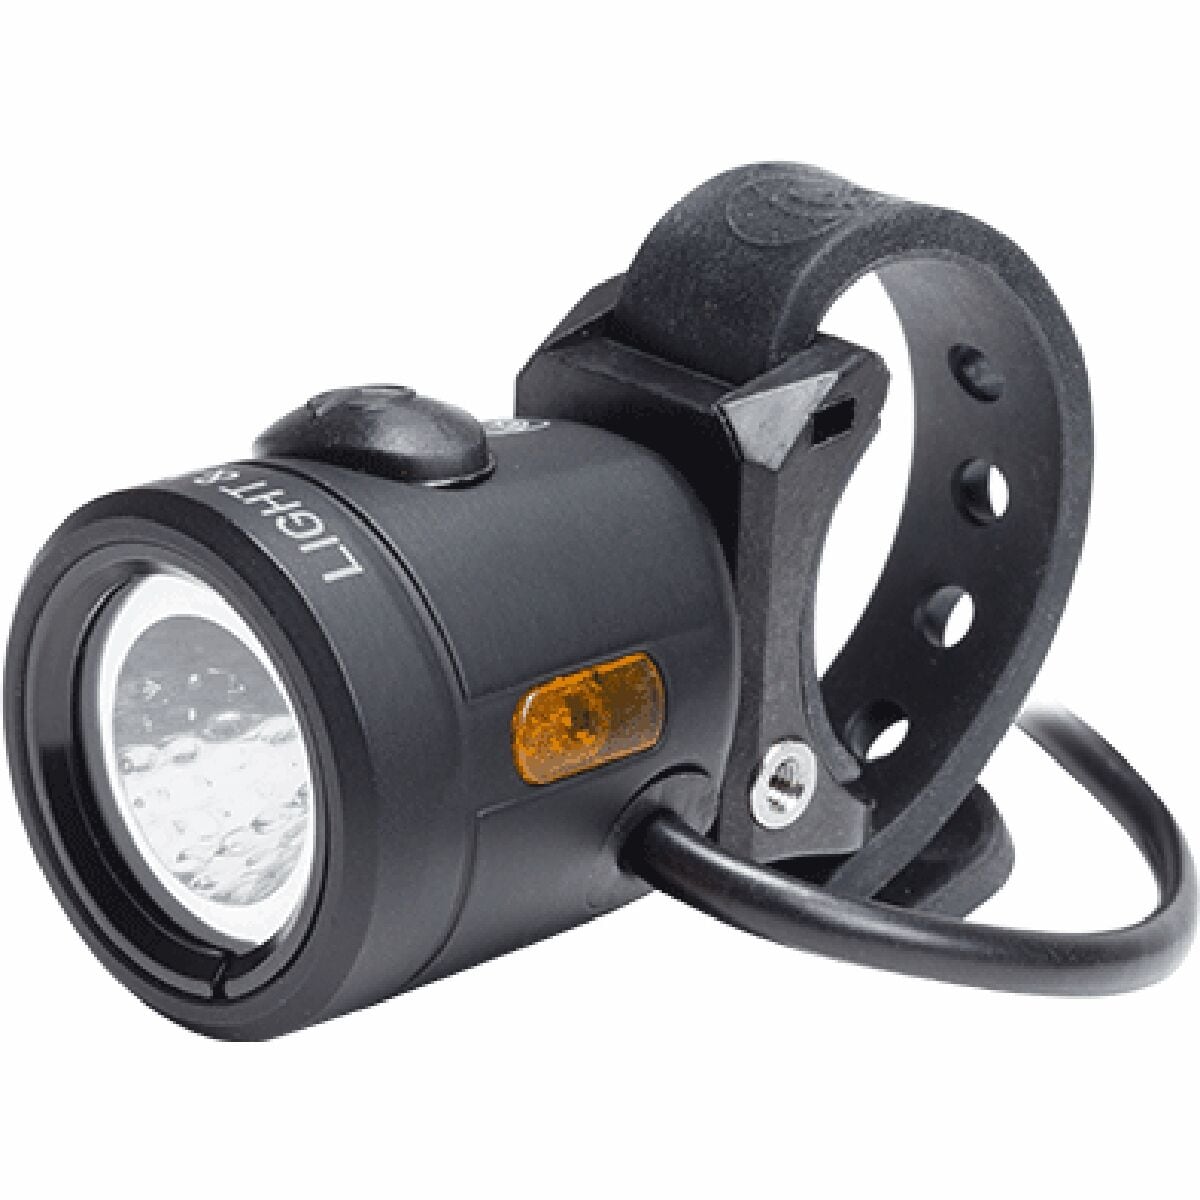 Light & Motion Vis E-800 eBike Headlight